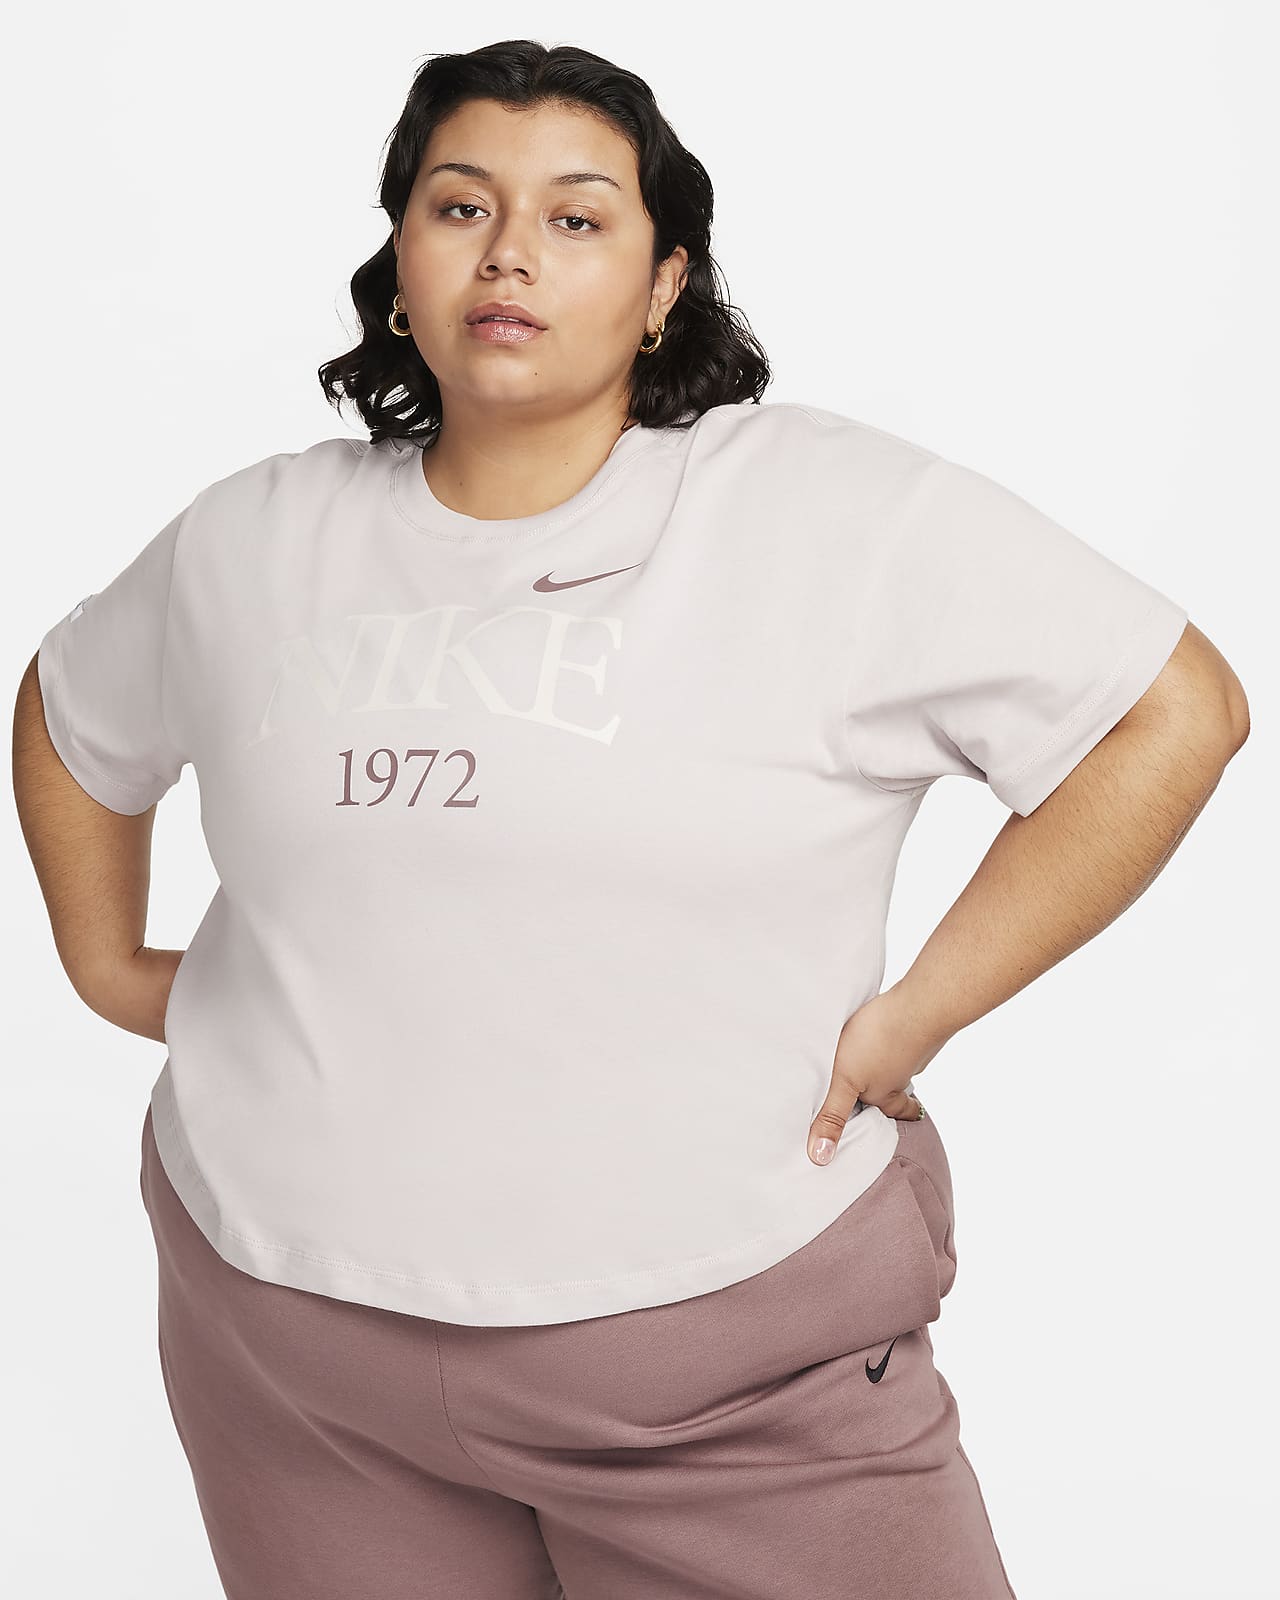 Nike Sportswear Classic Women's T-Shirt (Plus Size). Nike LU